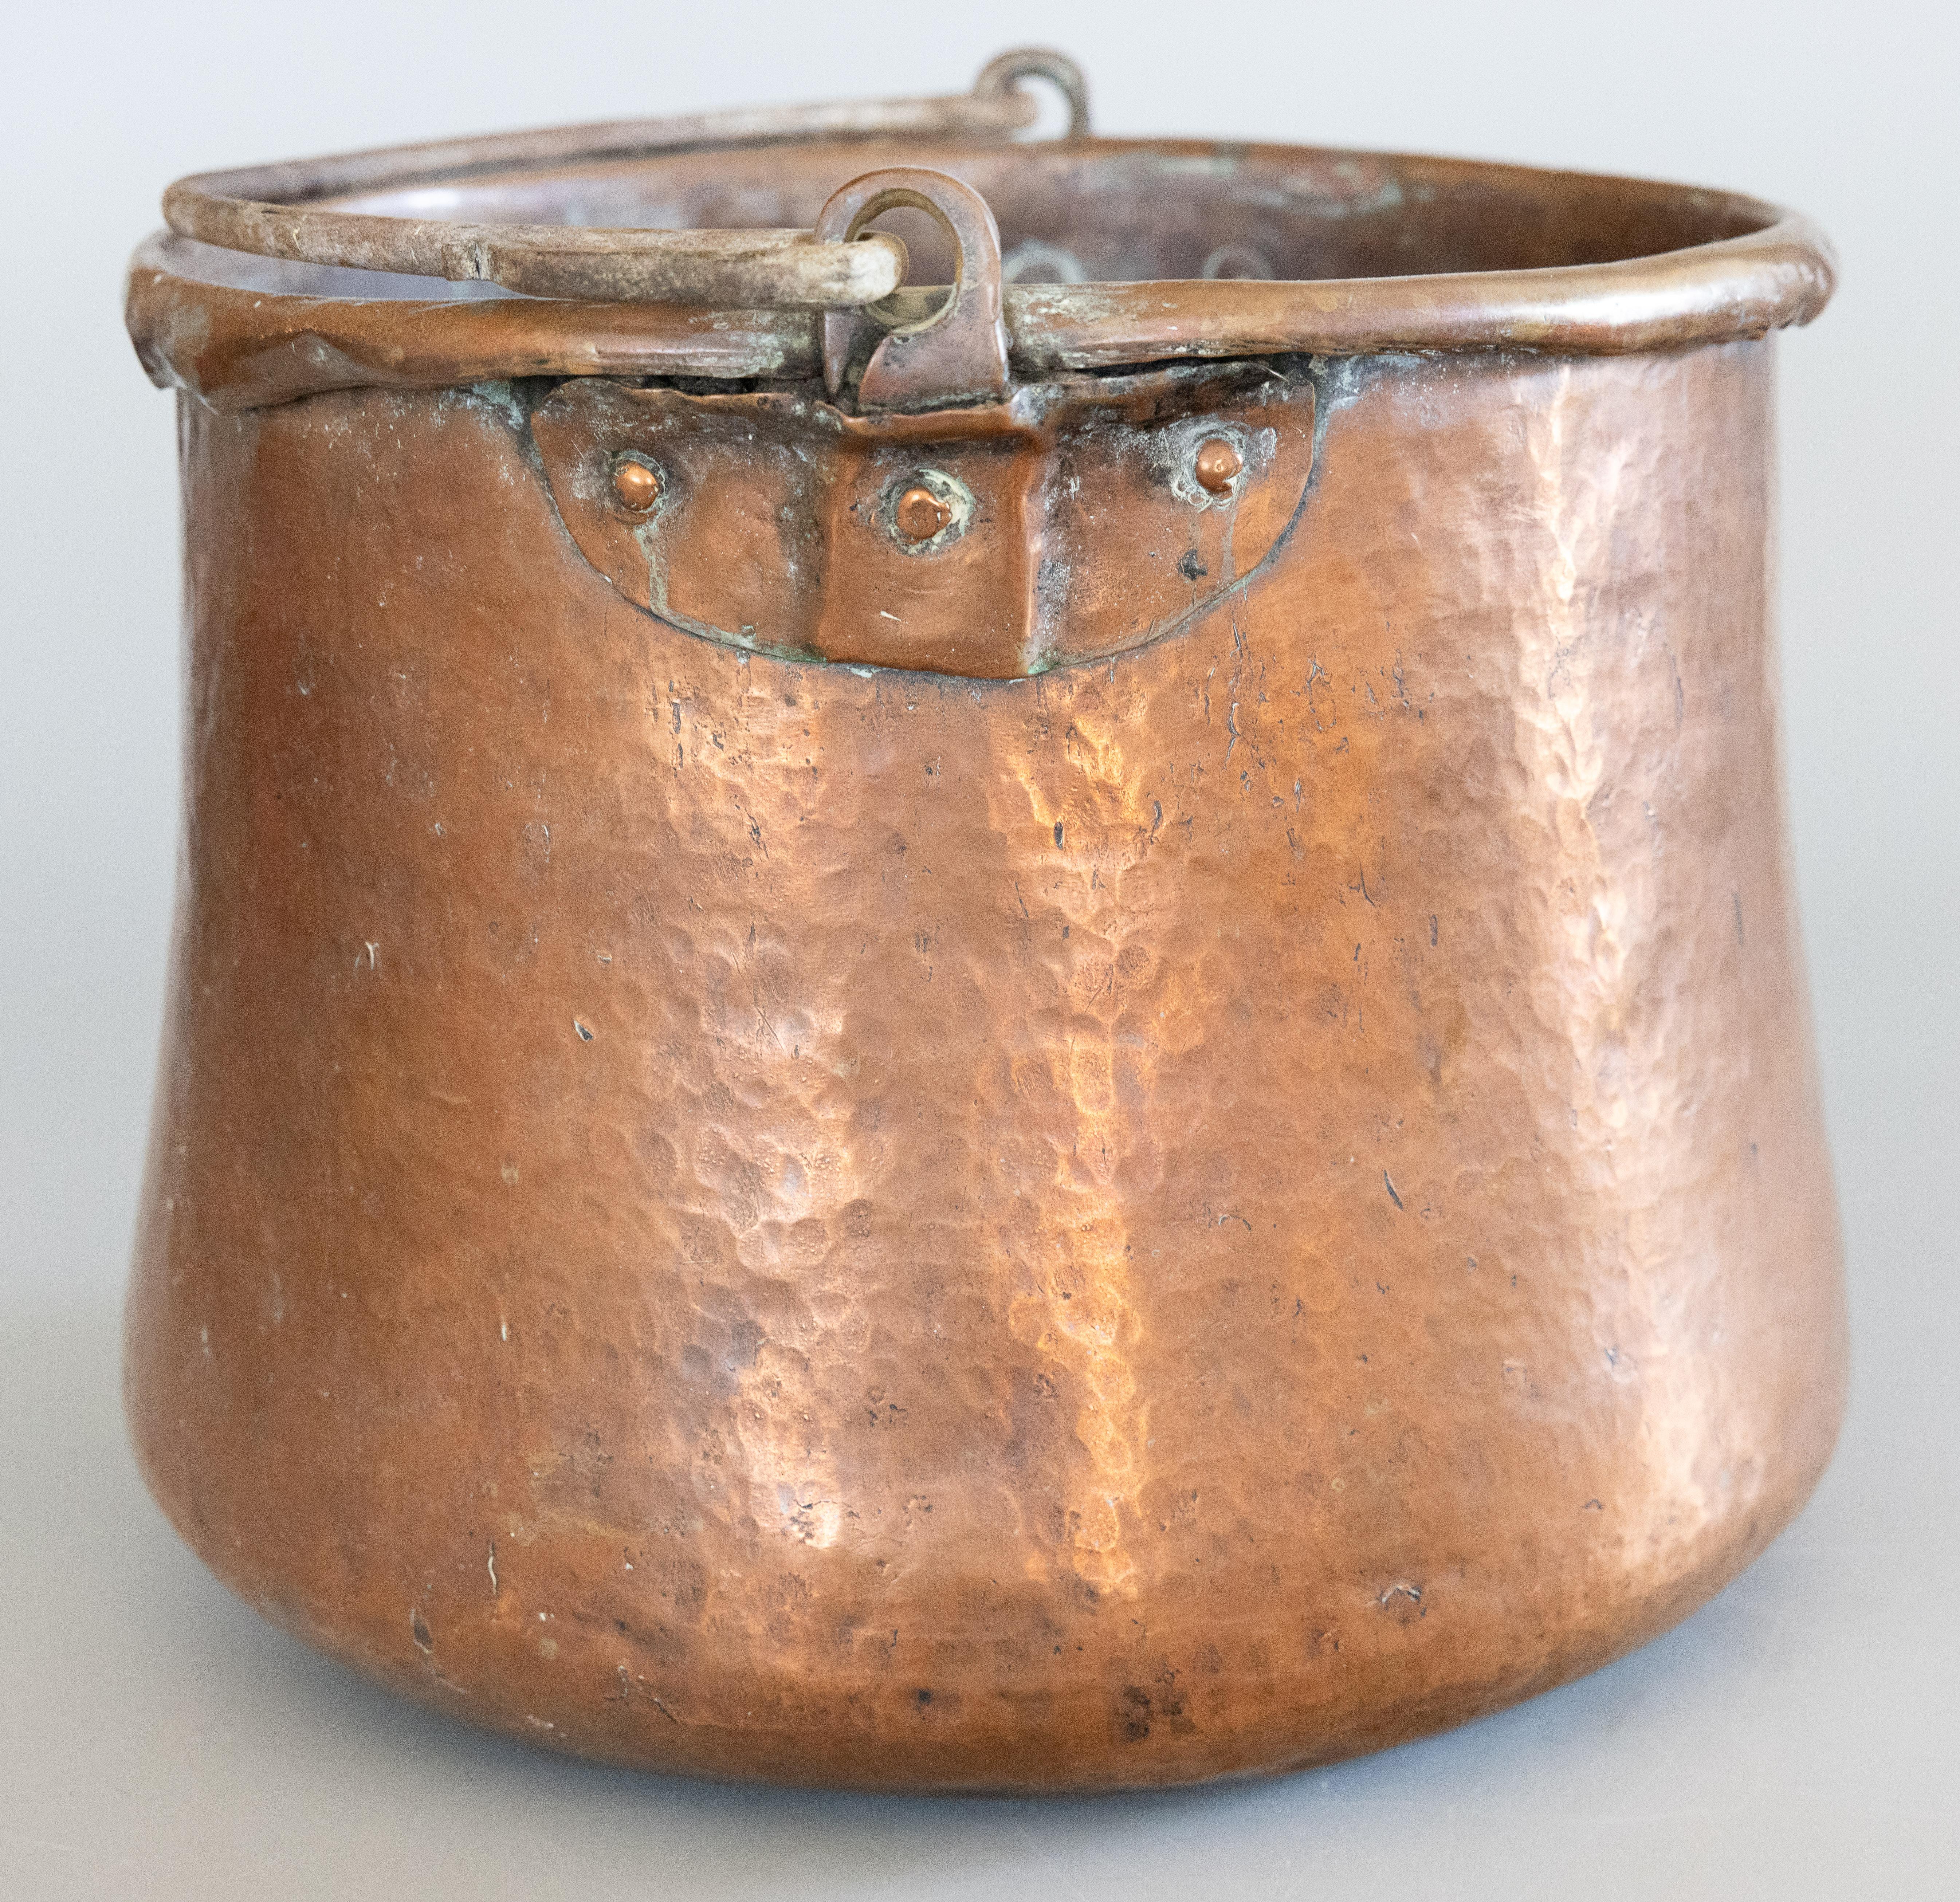 Un grand chaudron ancien du 19ème siècle en cuivre martelé riveté avec une charmante poignée en fer forgé. Il s'agit d'un authentique pot en cuivre rouge martelé à la main datant du 19e siècle et provenant de Normandie, France. Il est solide et